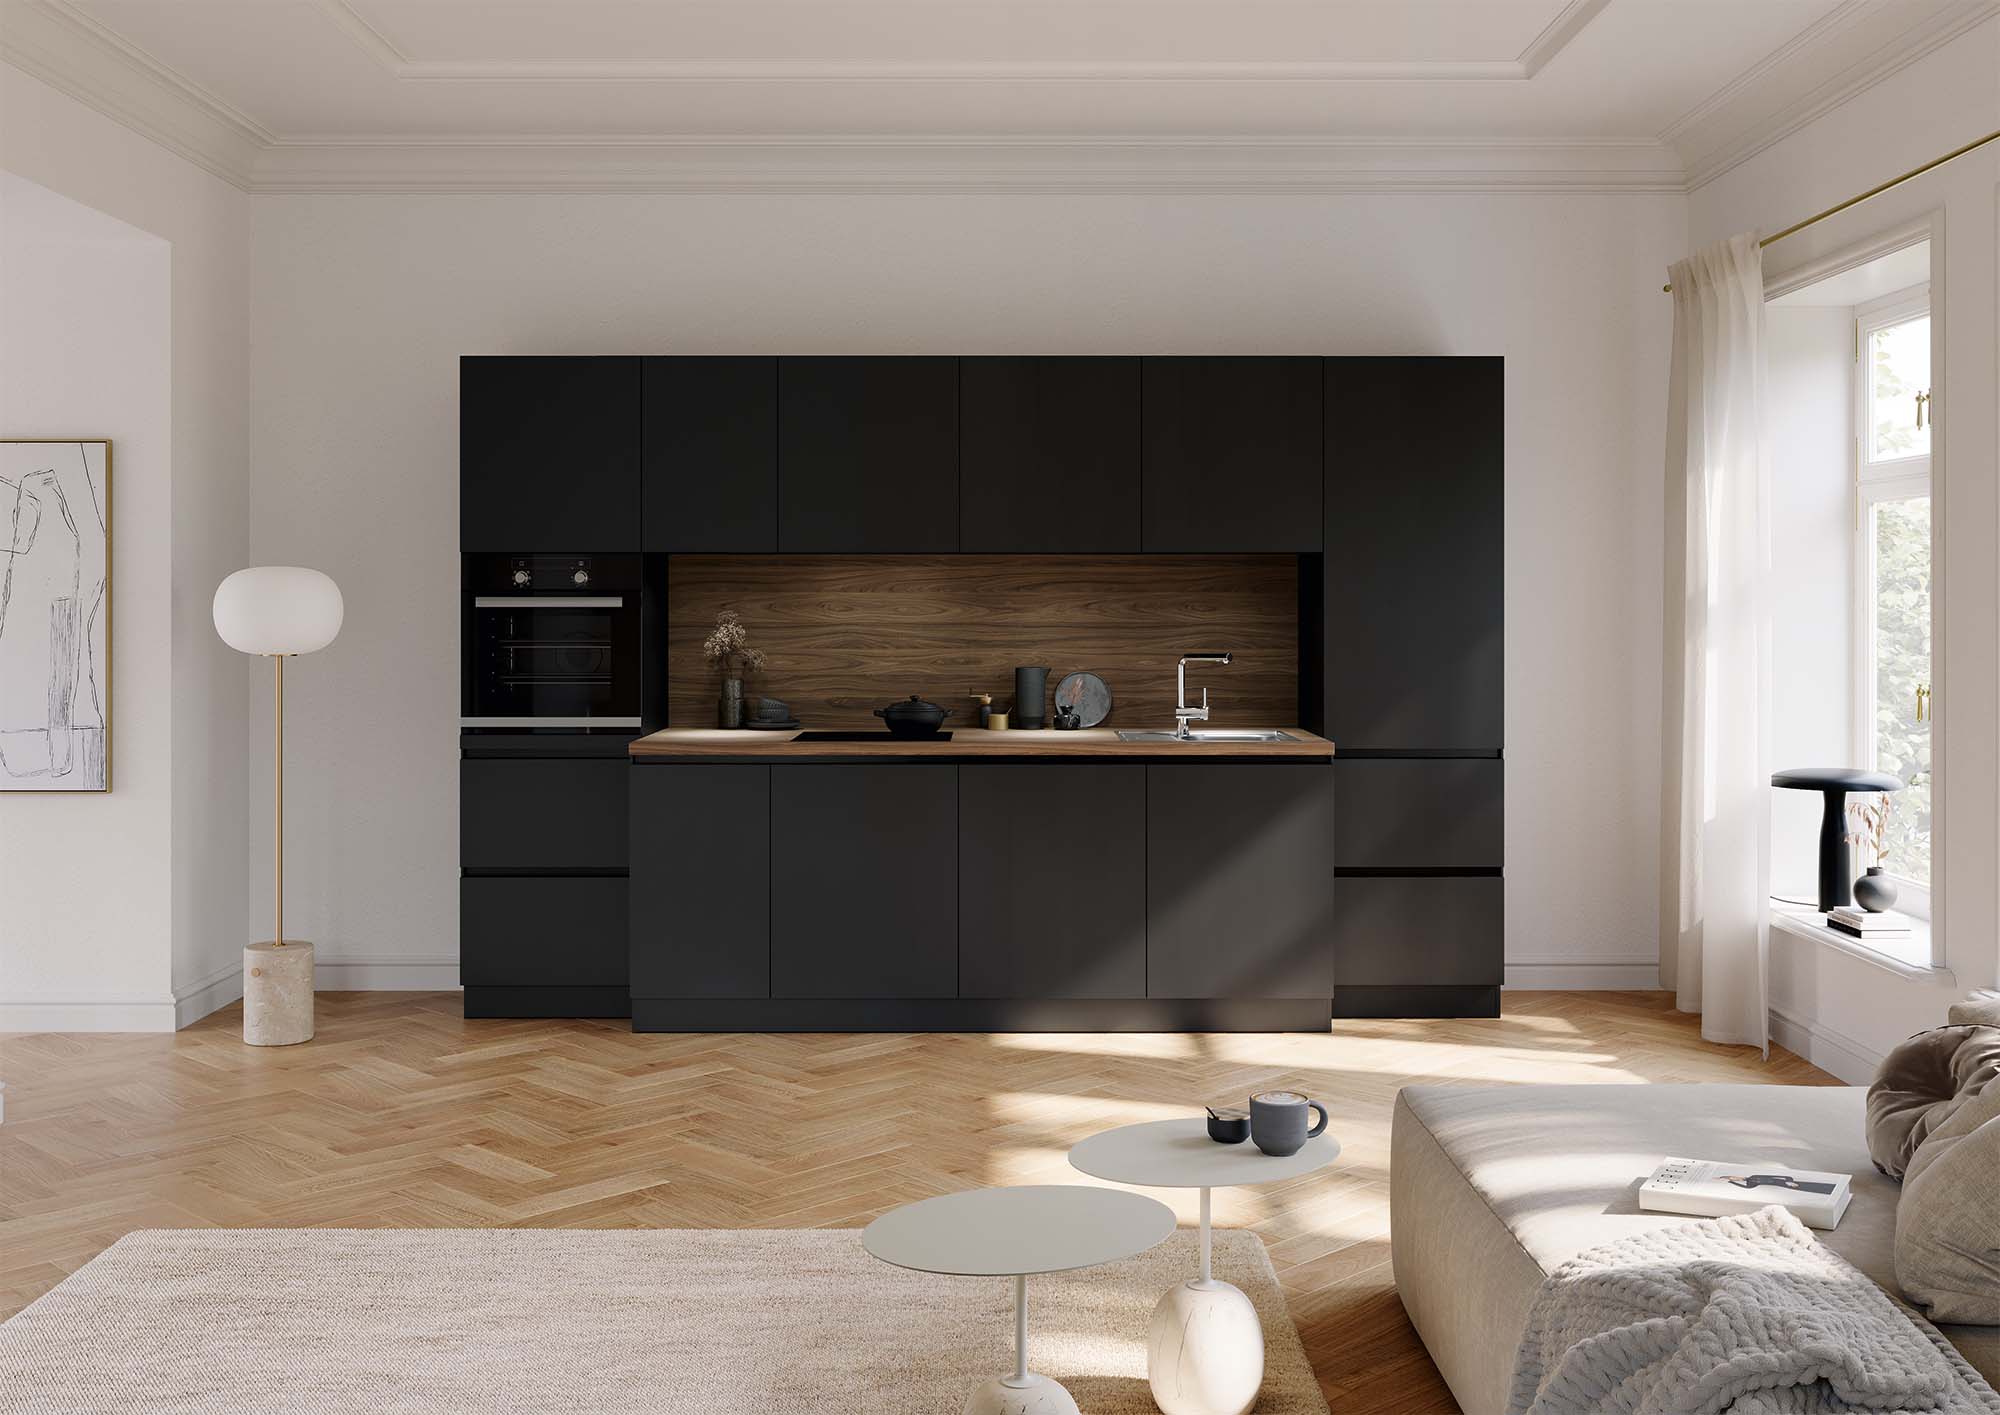 Elegantly designed black small kitchen by Krieder UK